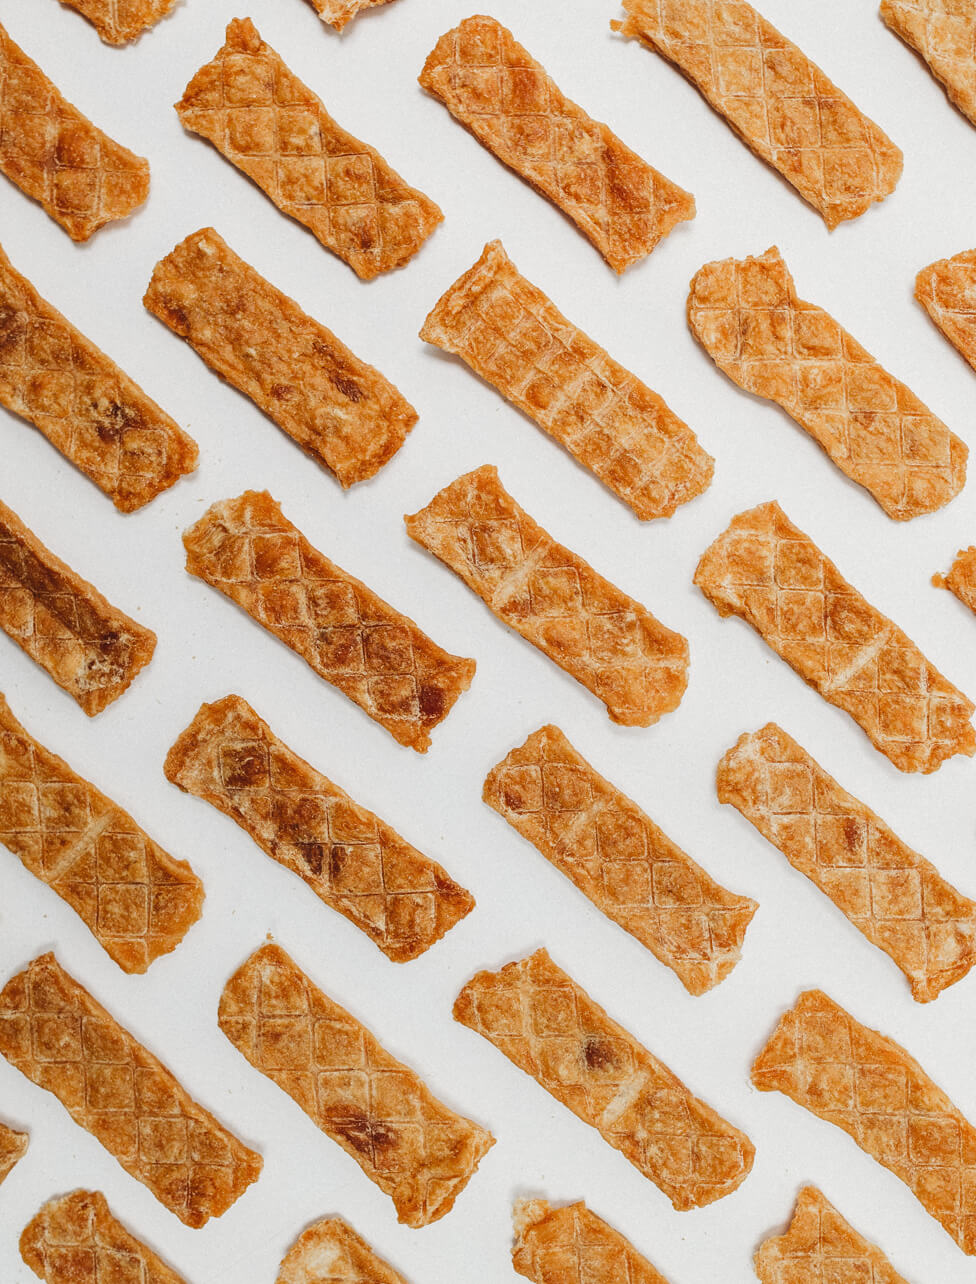 custom photo of chicken jerky strips in a grid pattern